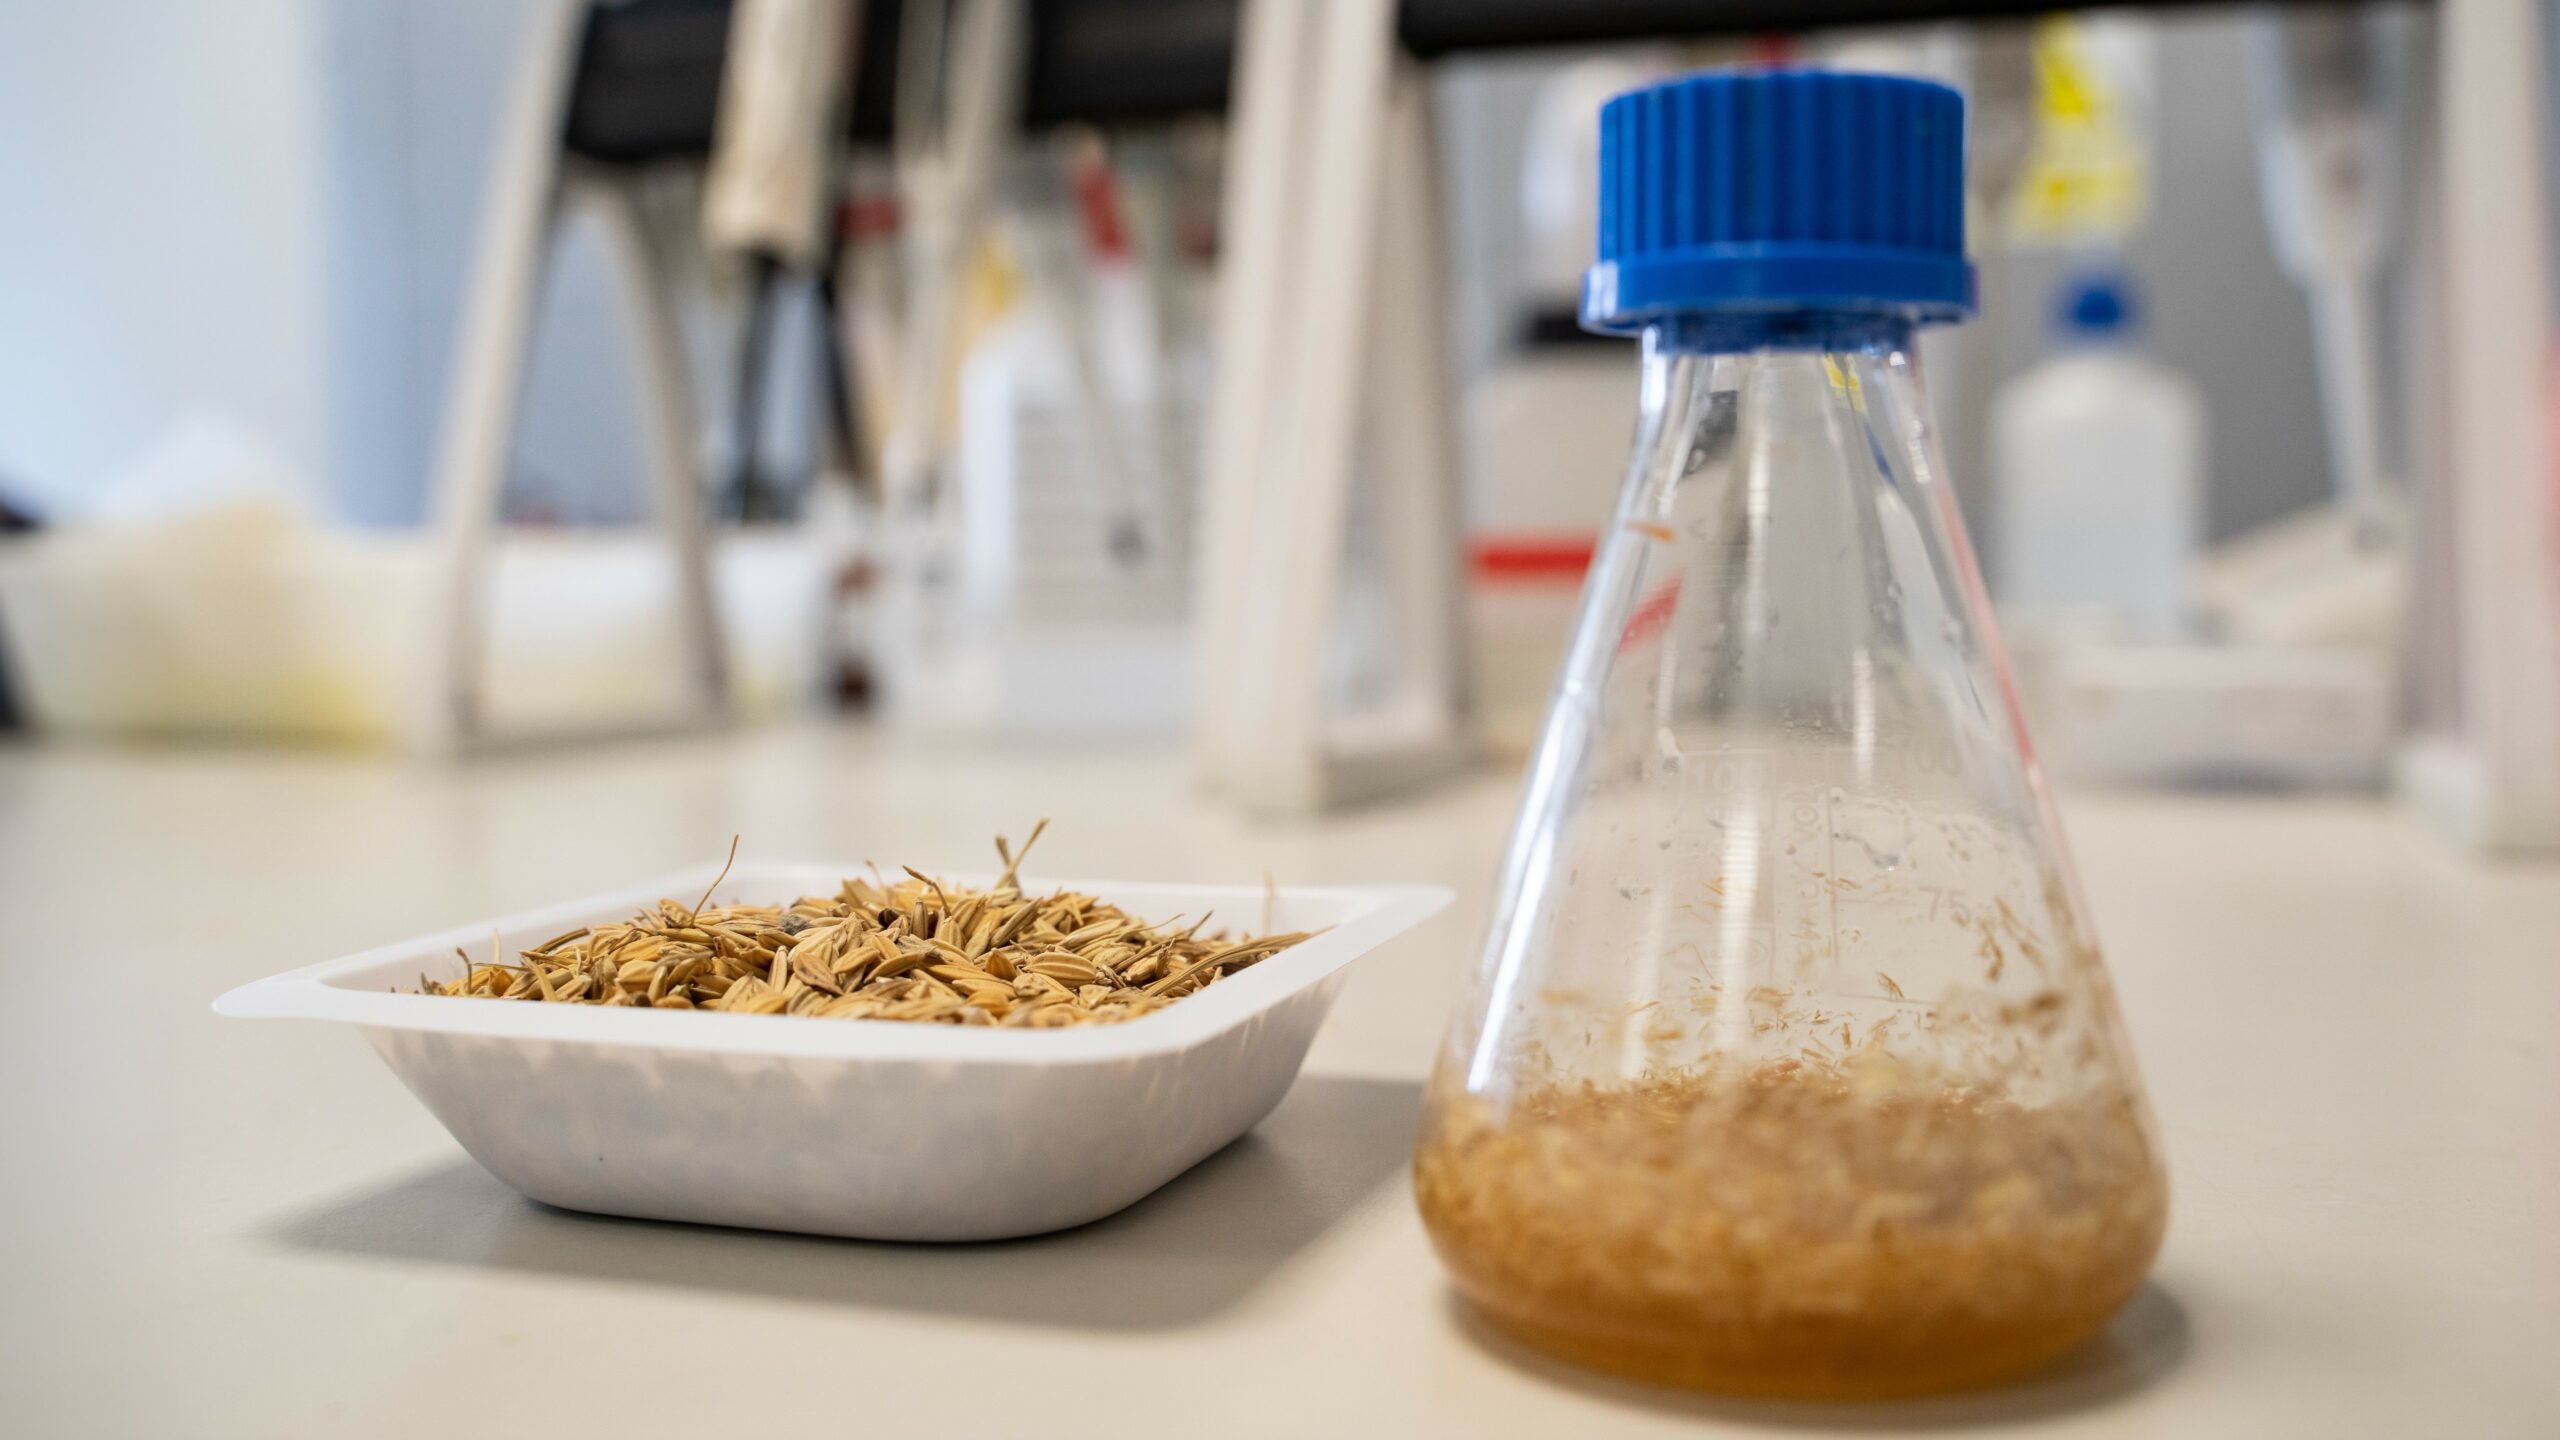 Muestra de cascarilla de arroz utilizada en ESENCIAL (izquierda) y montaje de los ensayos de hidrólisis enzimática en matraz para la obtención de hidrolizados ricos en azúcares de segunda generación (derecha).